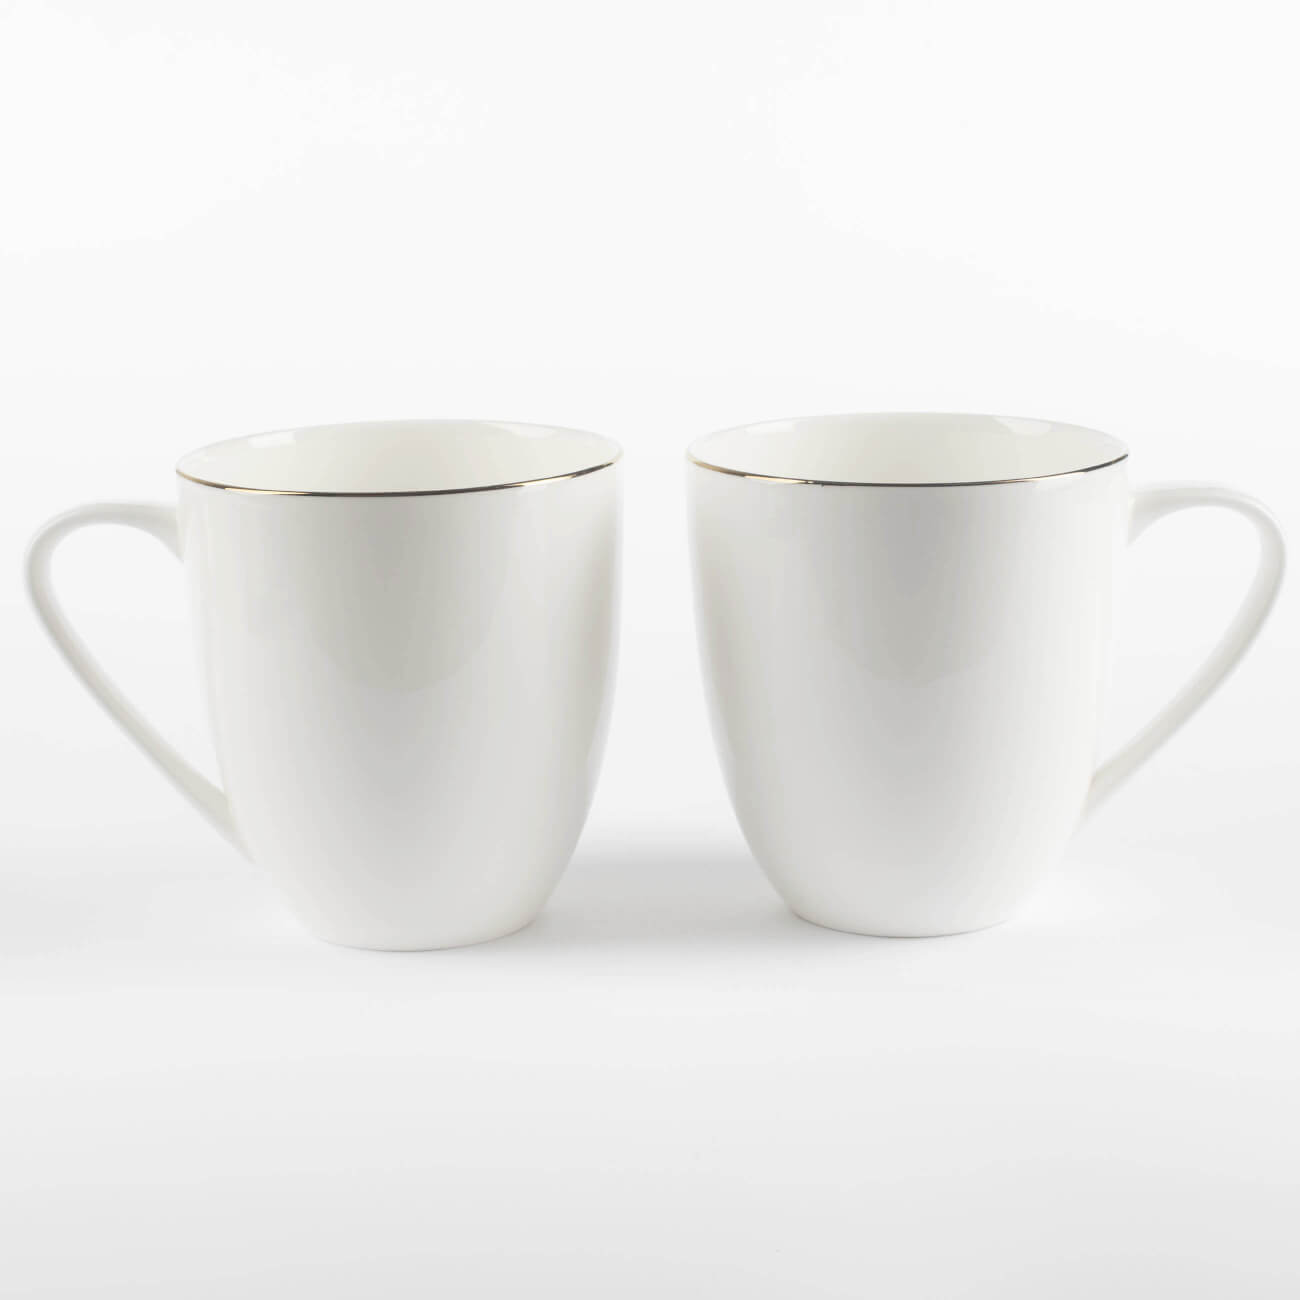 Mug, 450 ml, 2 pcs, porcelain F, white, Ideal gold изображение № 1